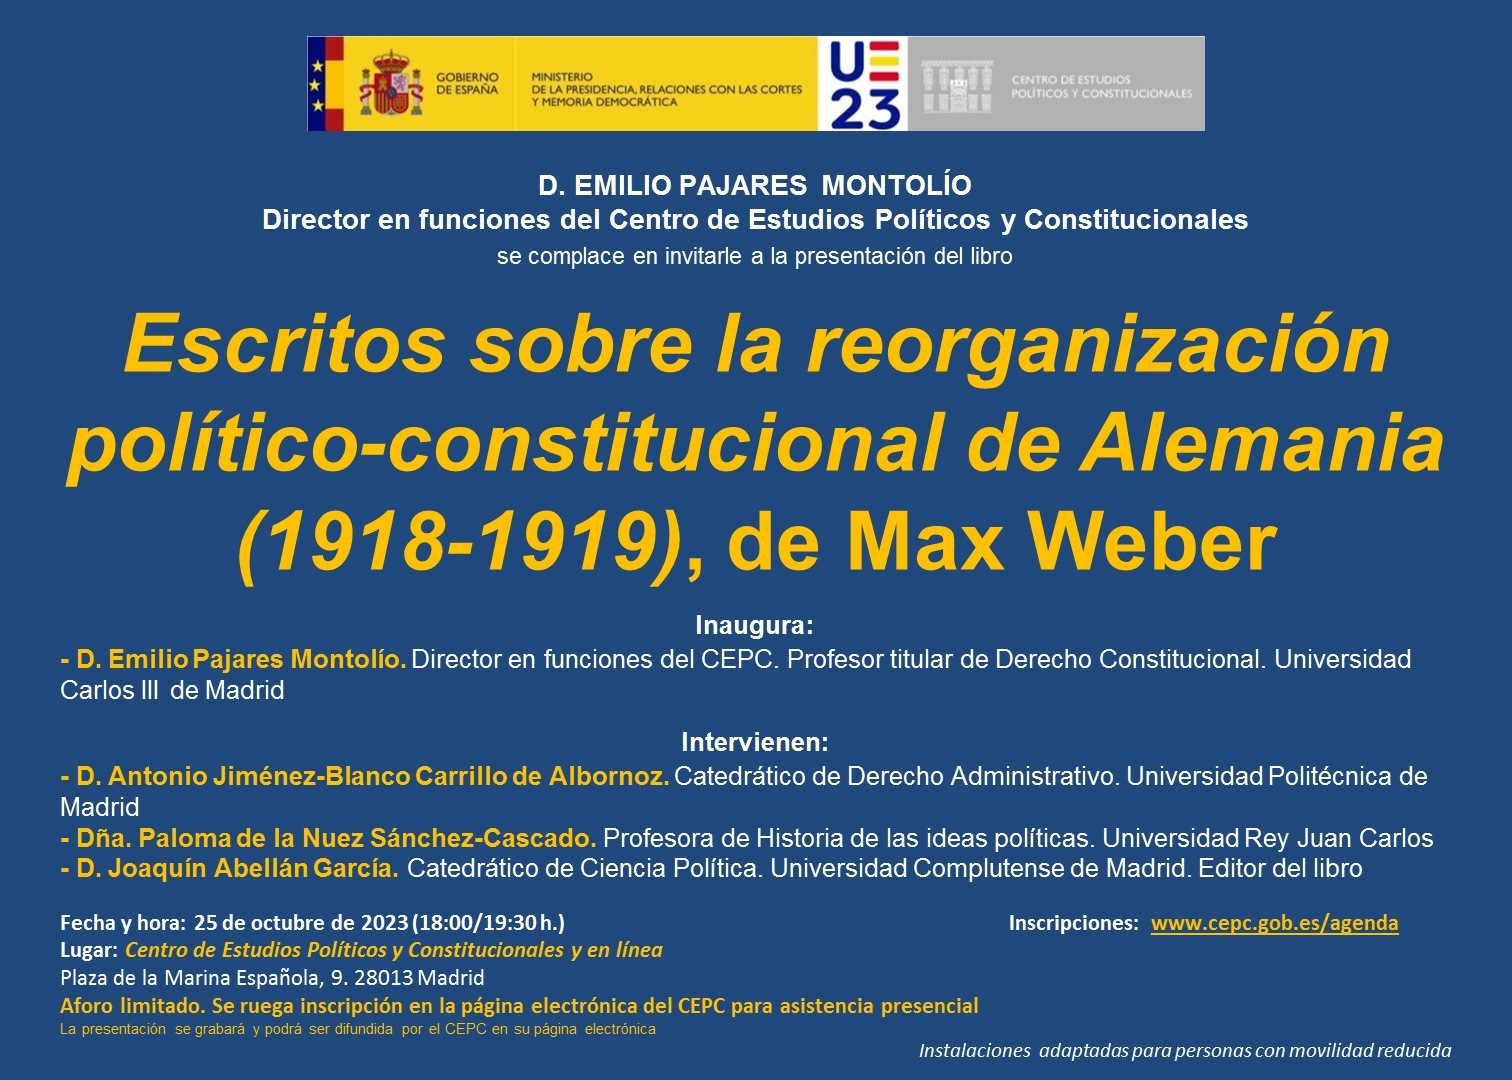 Presentación del libro "Escritos sobre la reorganización político-constitucional de Alemania (1918-1919)", de Max Weber